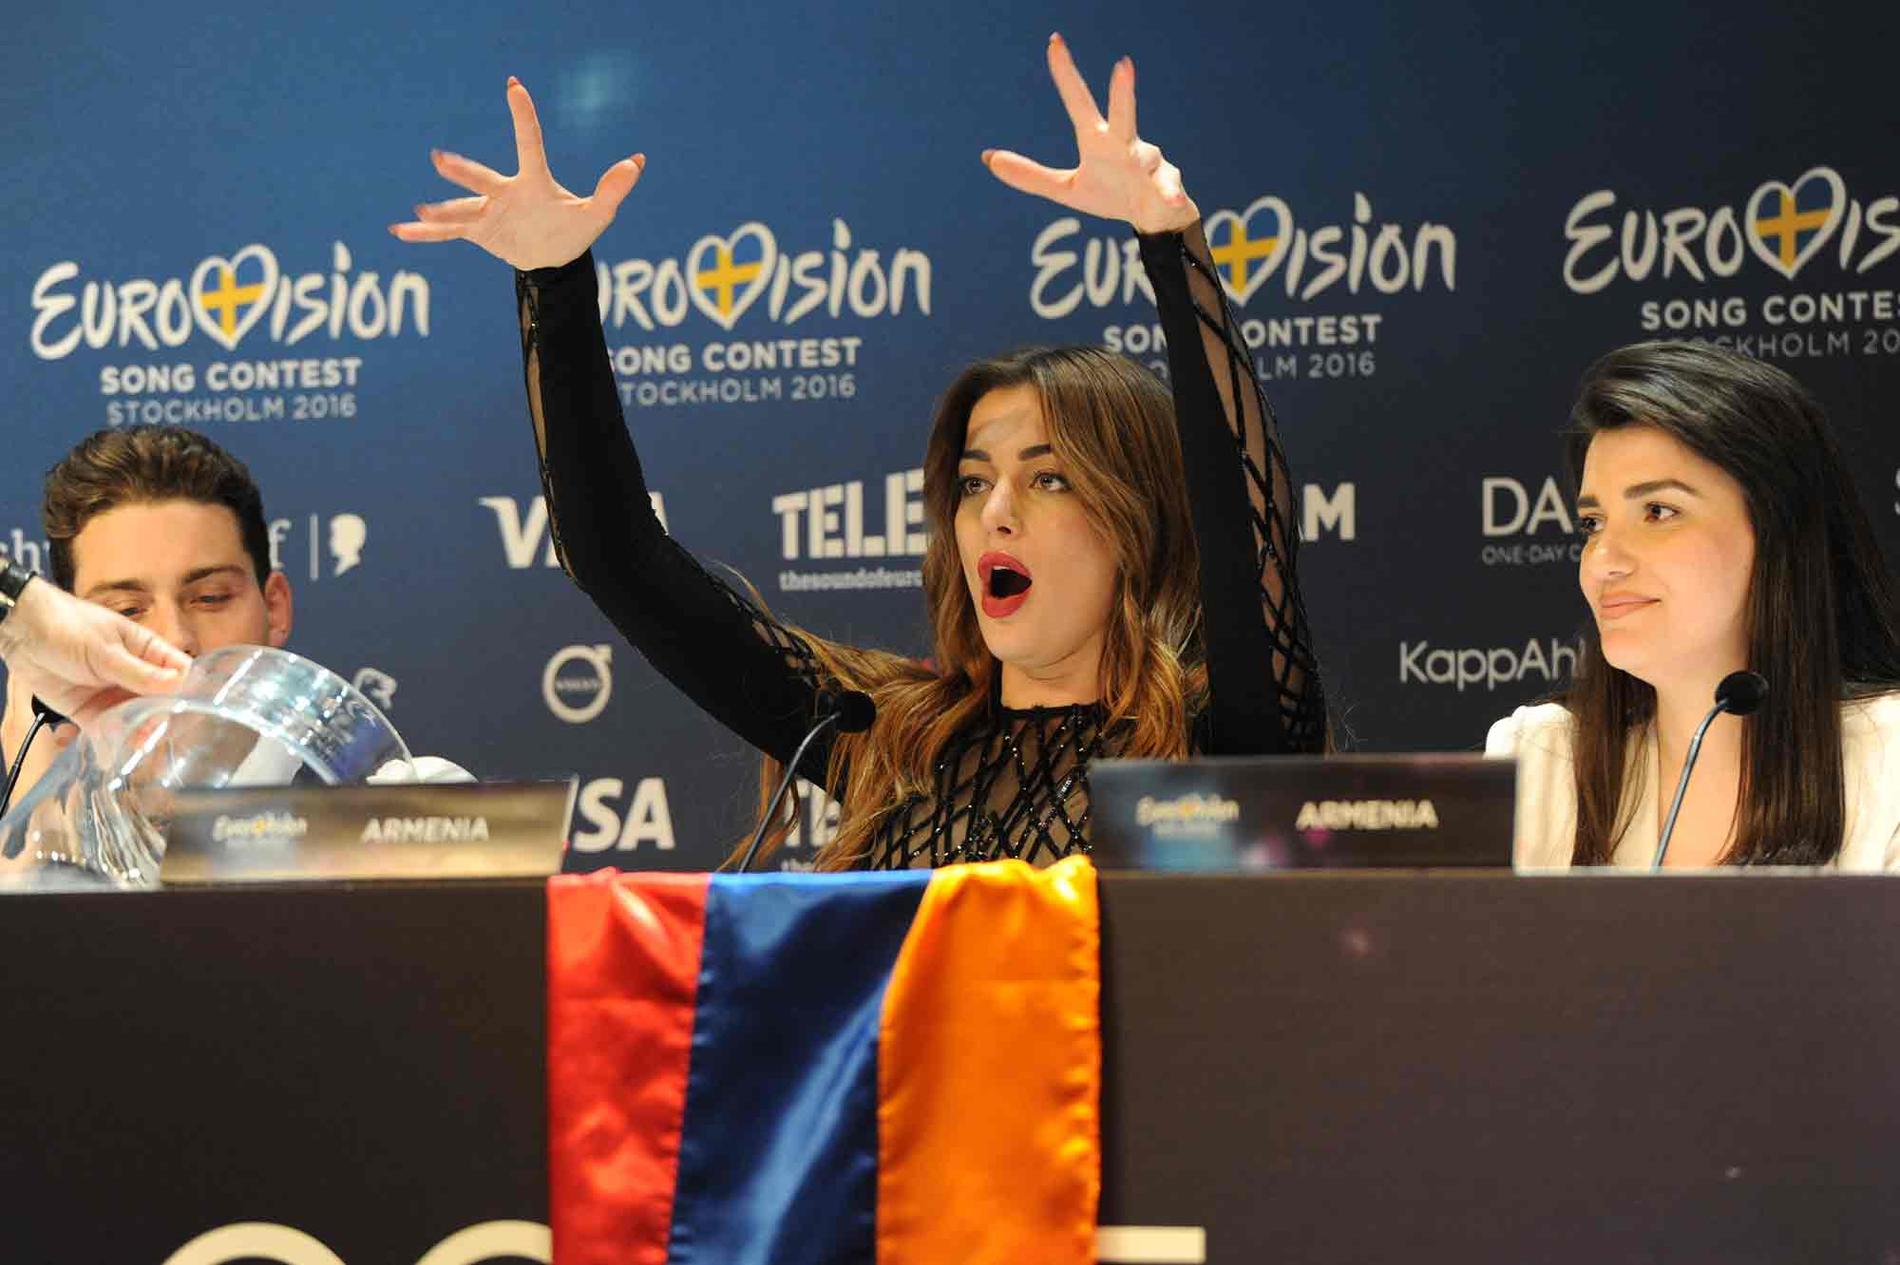 Armeniens deltagare Iveta Mukuchyan reagerar på tv-chefens tal.